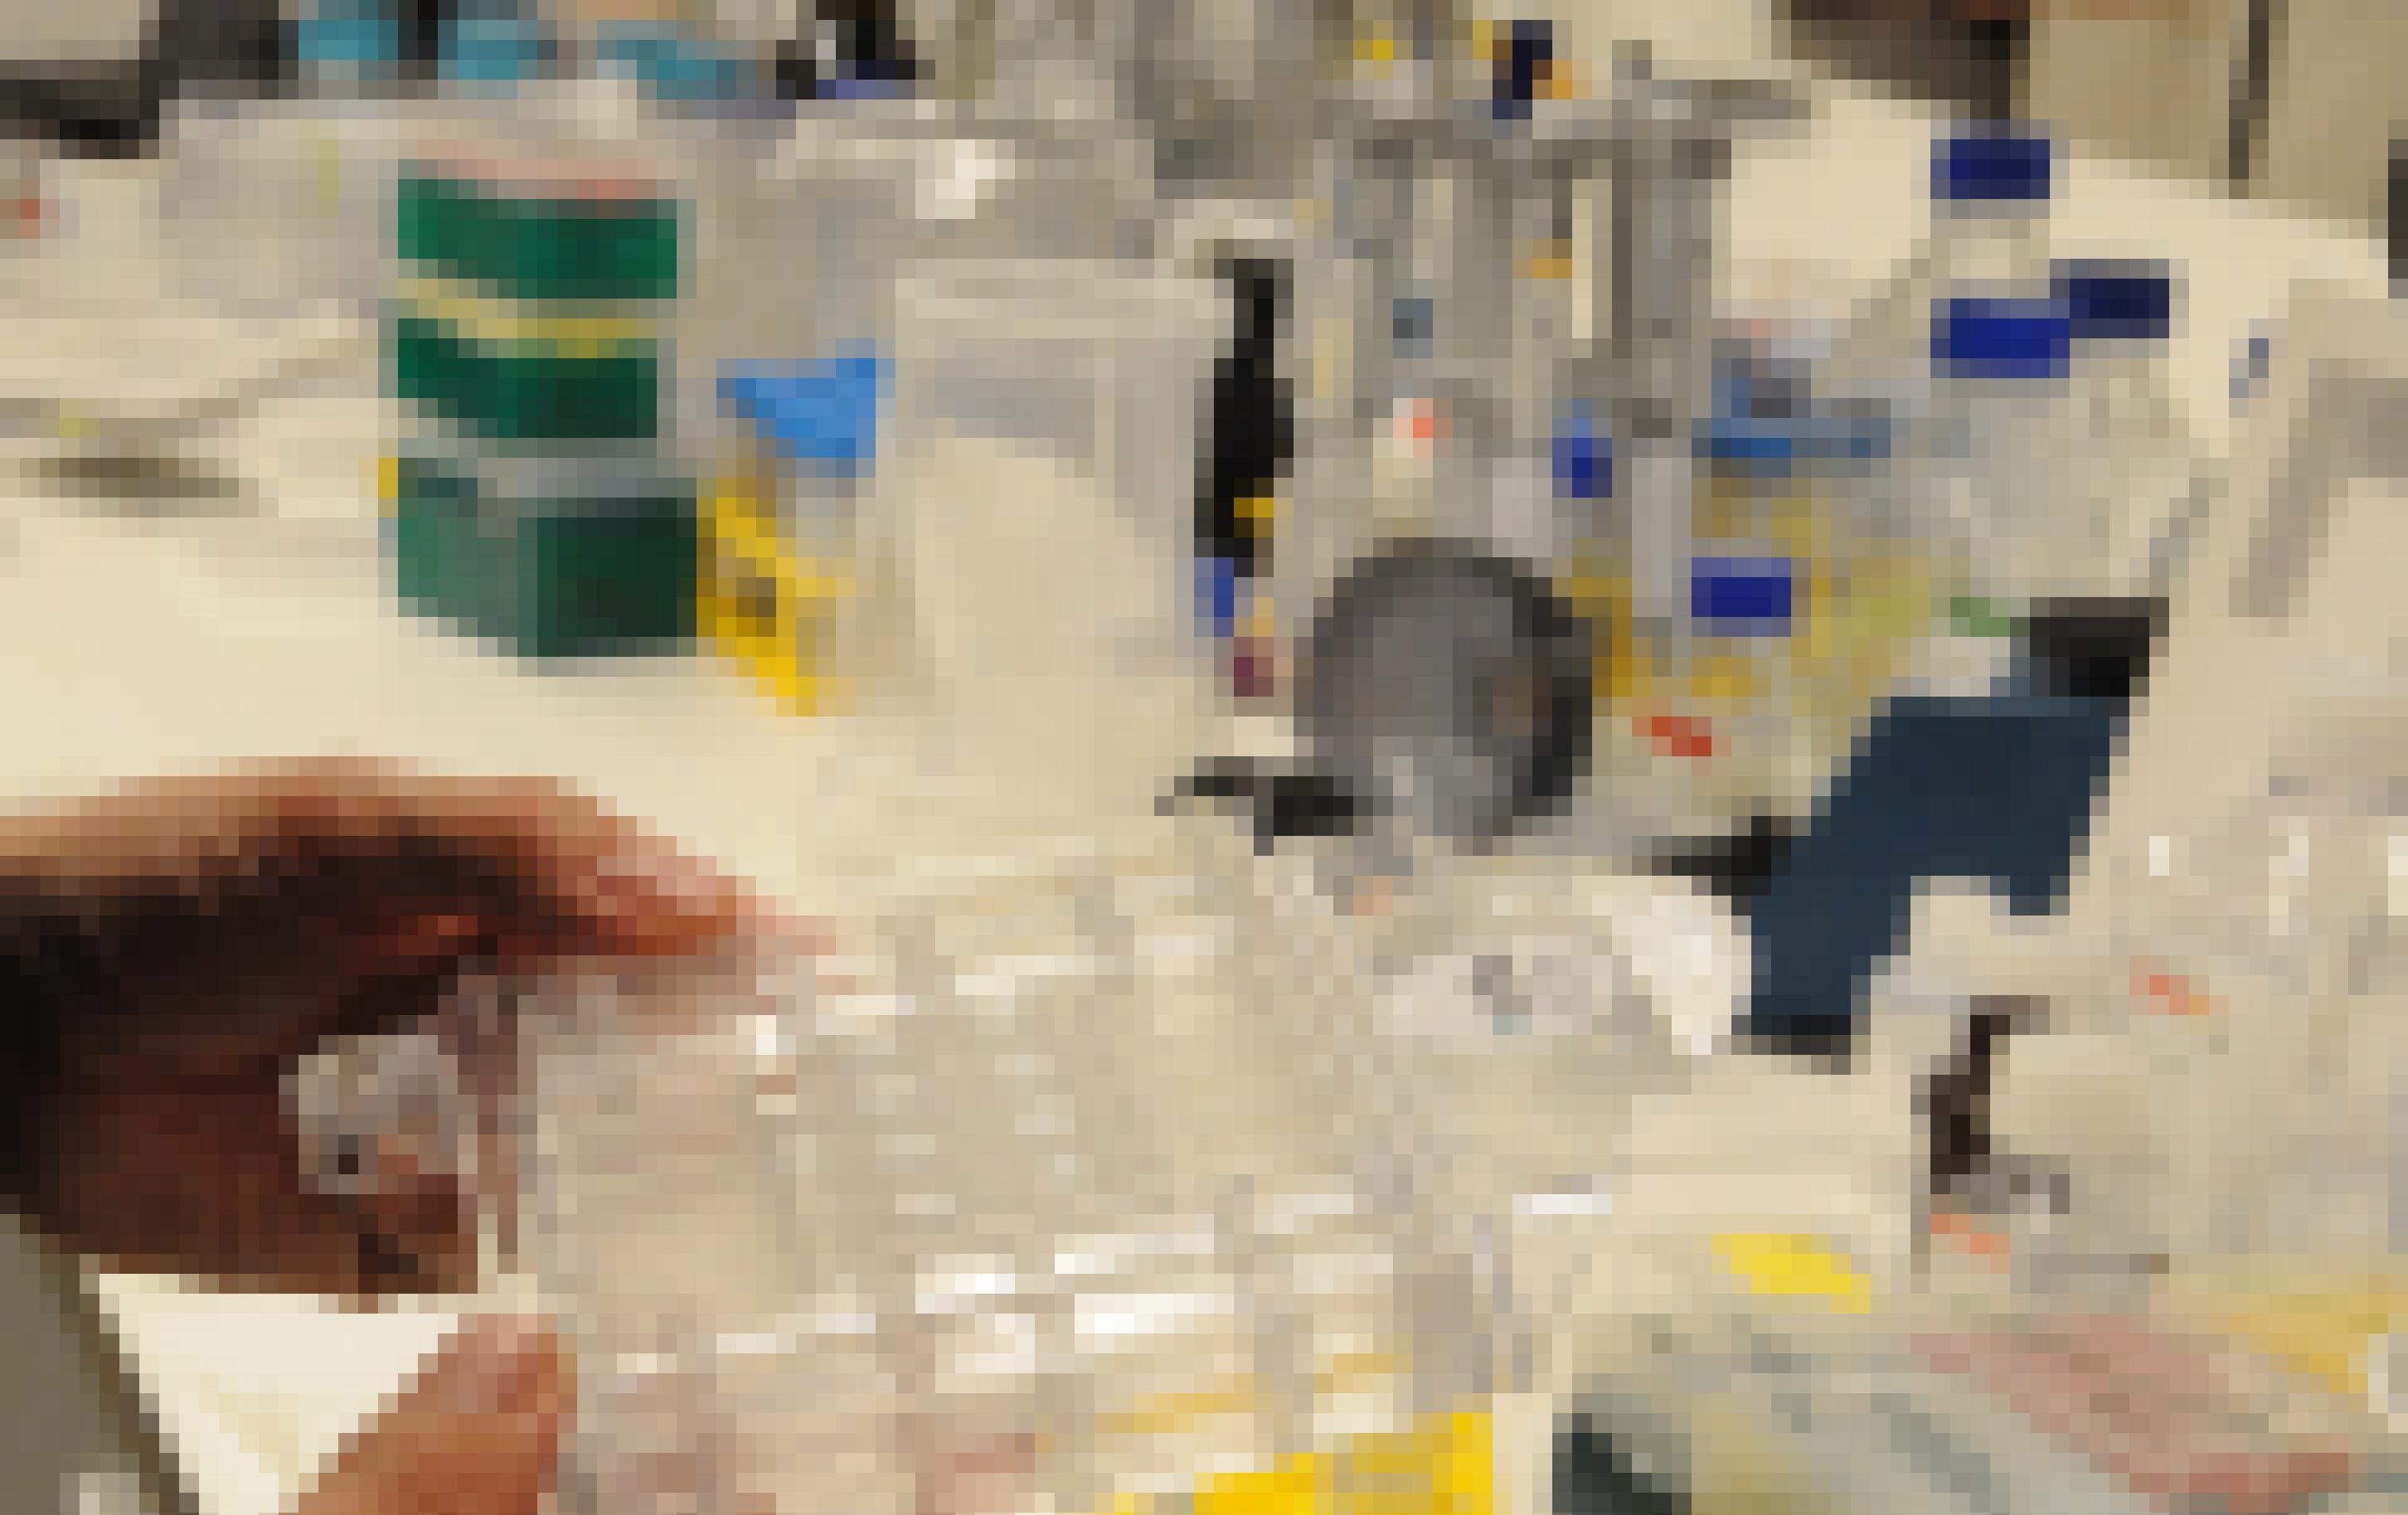 Eine Hand hält ein rechteckiges durchsichtiges Plastikgefäß, das mehrere Vertiefungen hat. Der Hintergrund zeigt unscharf Laborbedarf.